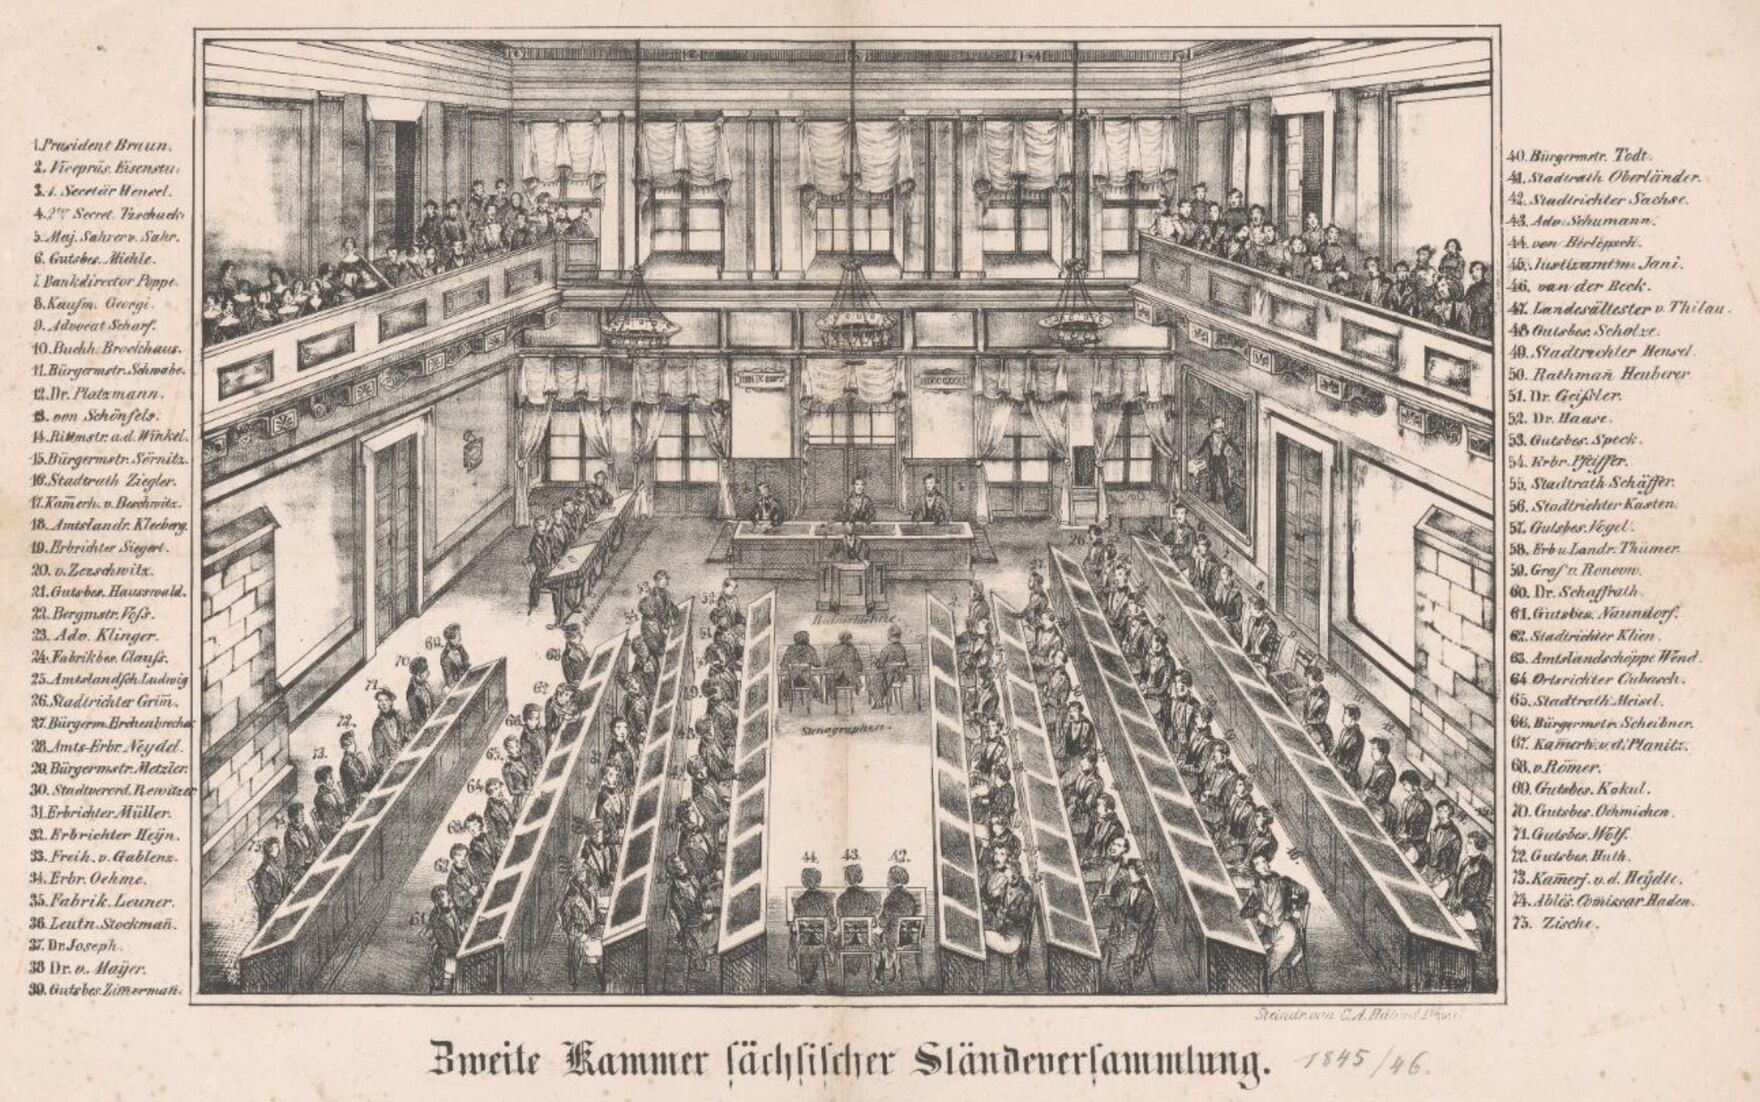 Zeichnung der Zweiten Kammer mit Mitgliederverzeichnis der Sächsischen Ständeversammlung 1845/46